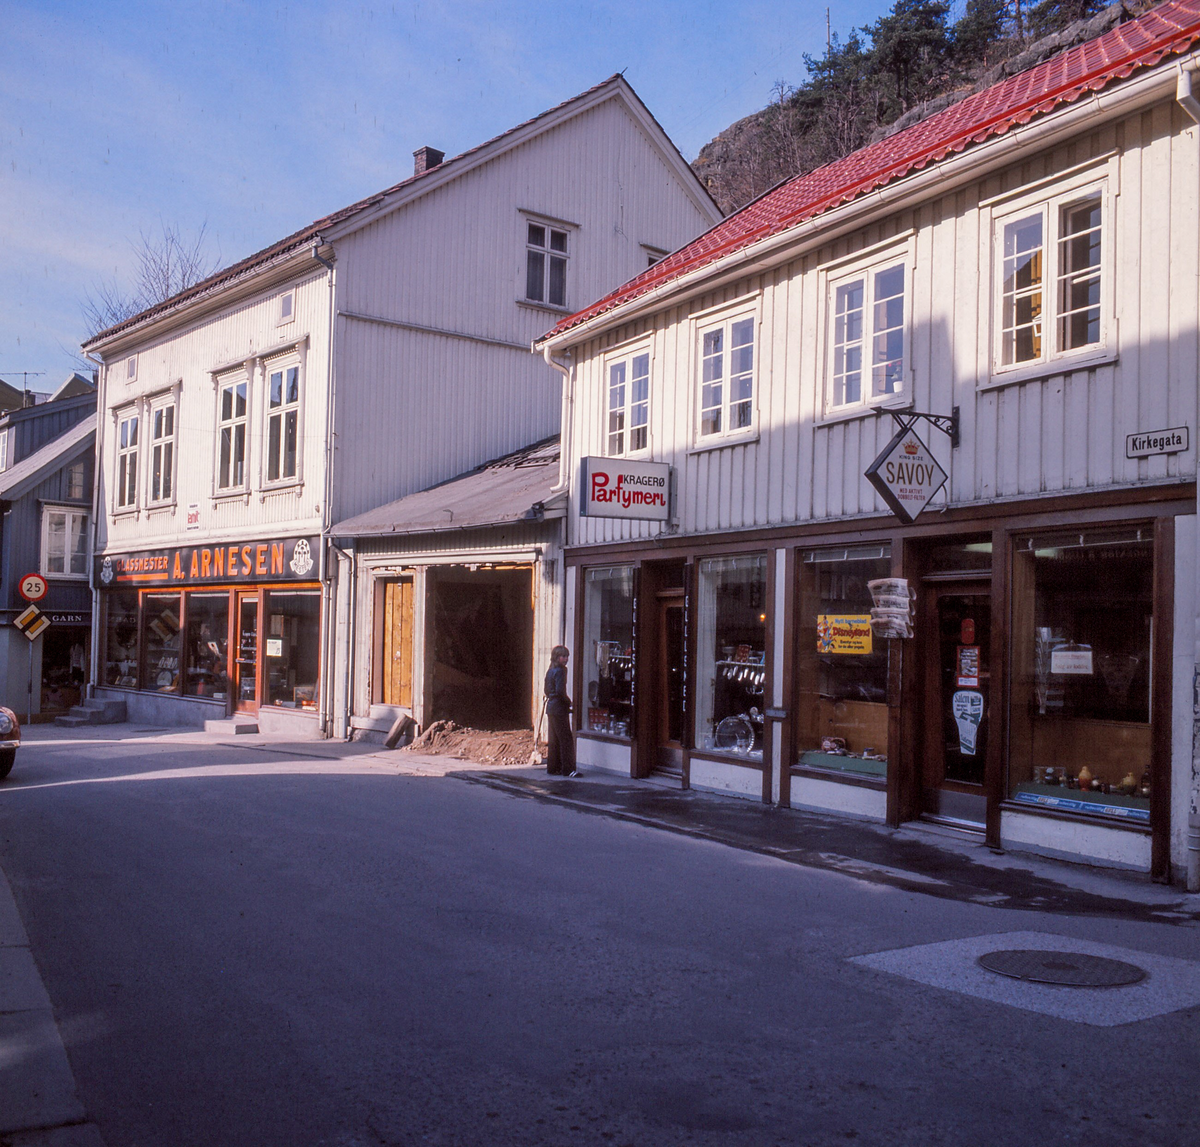 Tobakkbutikk, Parfymeri til Aatangen, Gullsmed Knutsens butikk bygges og Glassmester Arnesen. Kirkegata  1973